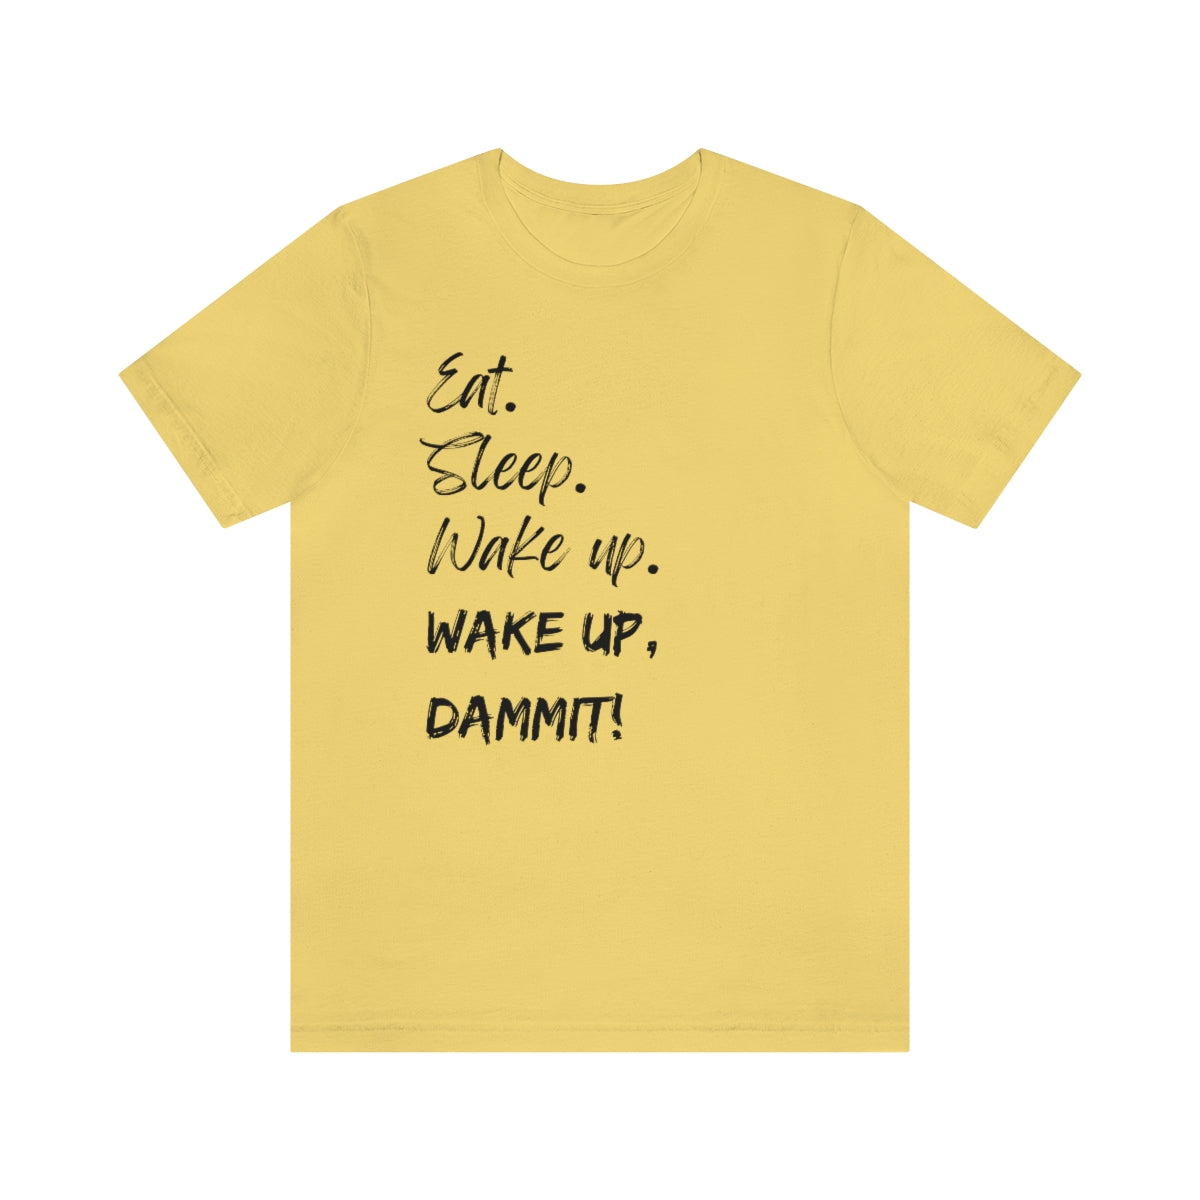 Eat. Sleep. Wake Up, Dammit! Unisex Jersey Short Sleeve Tee